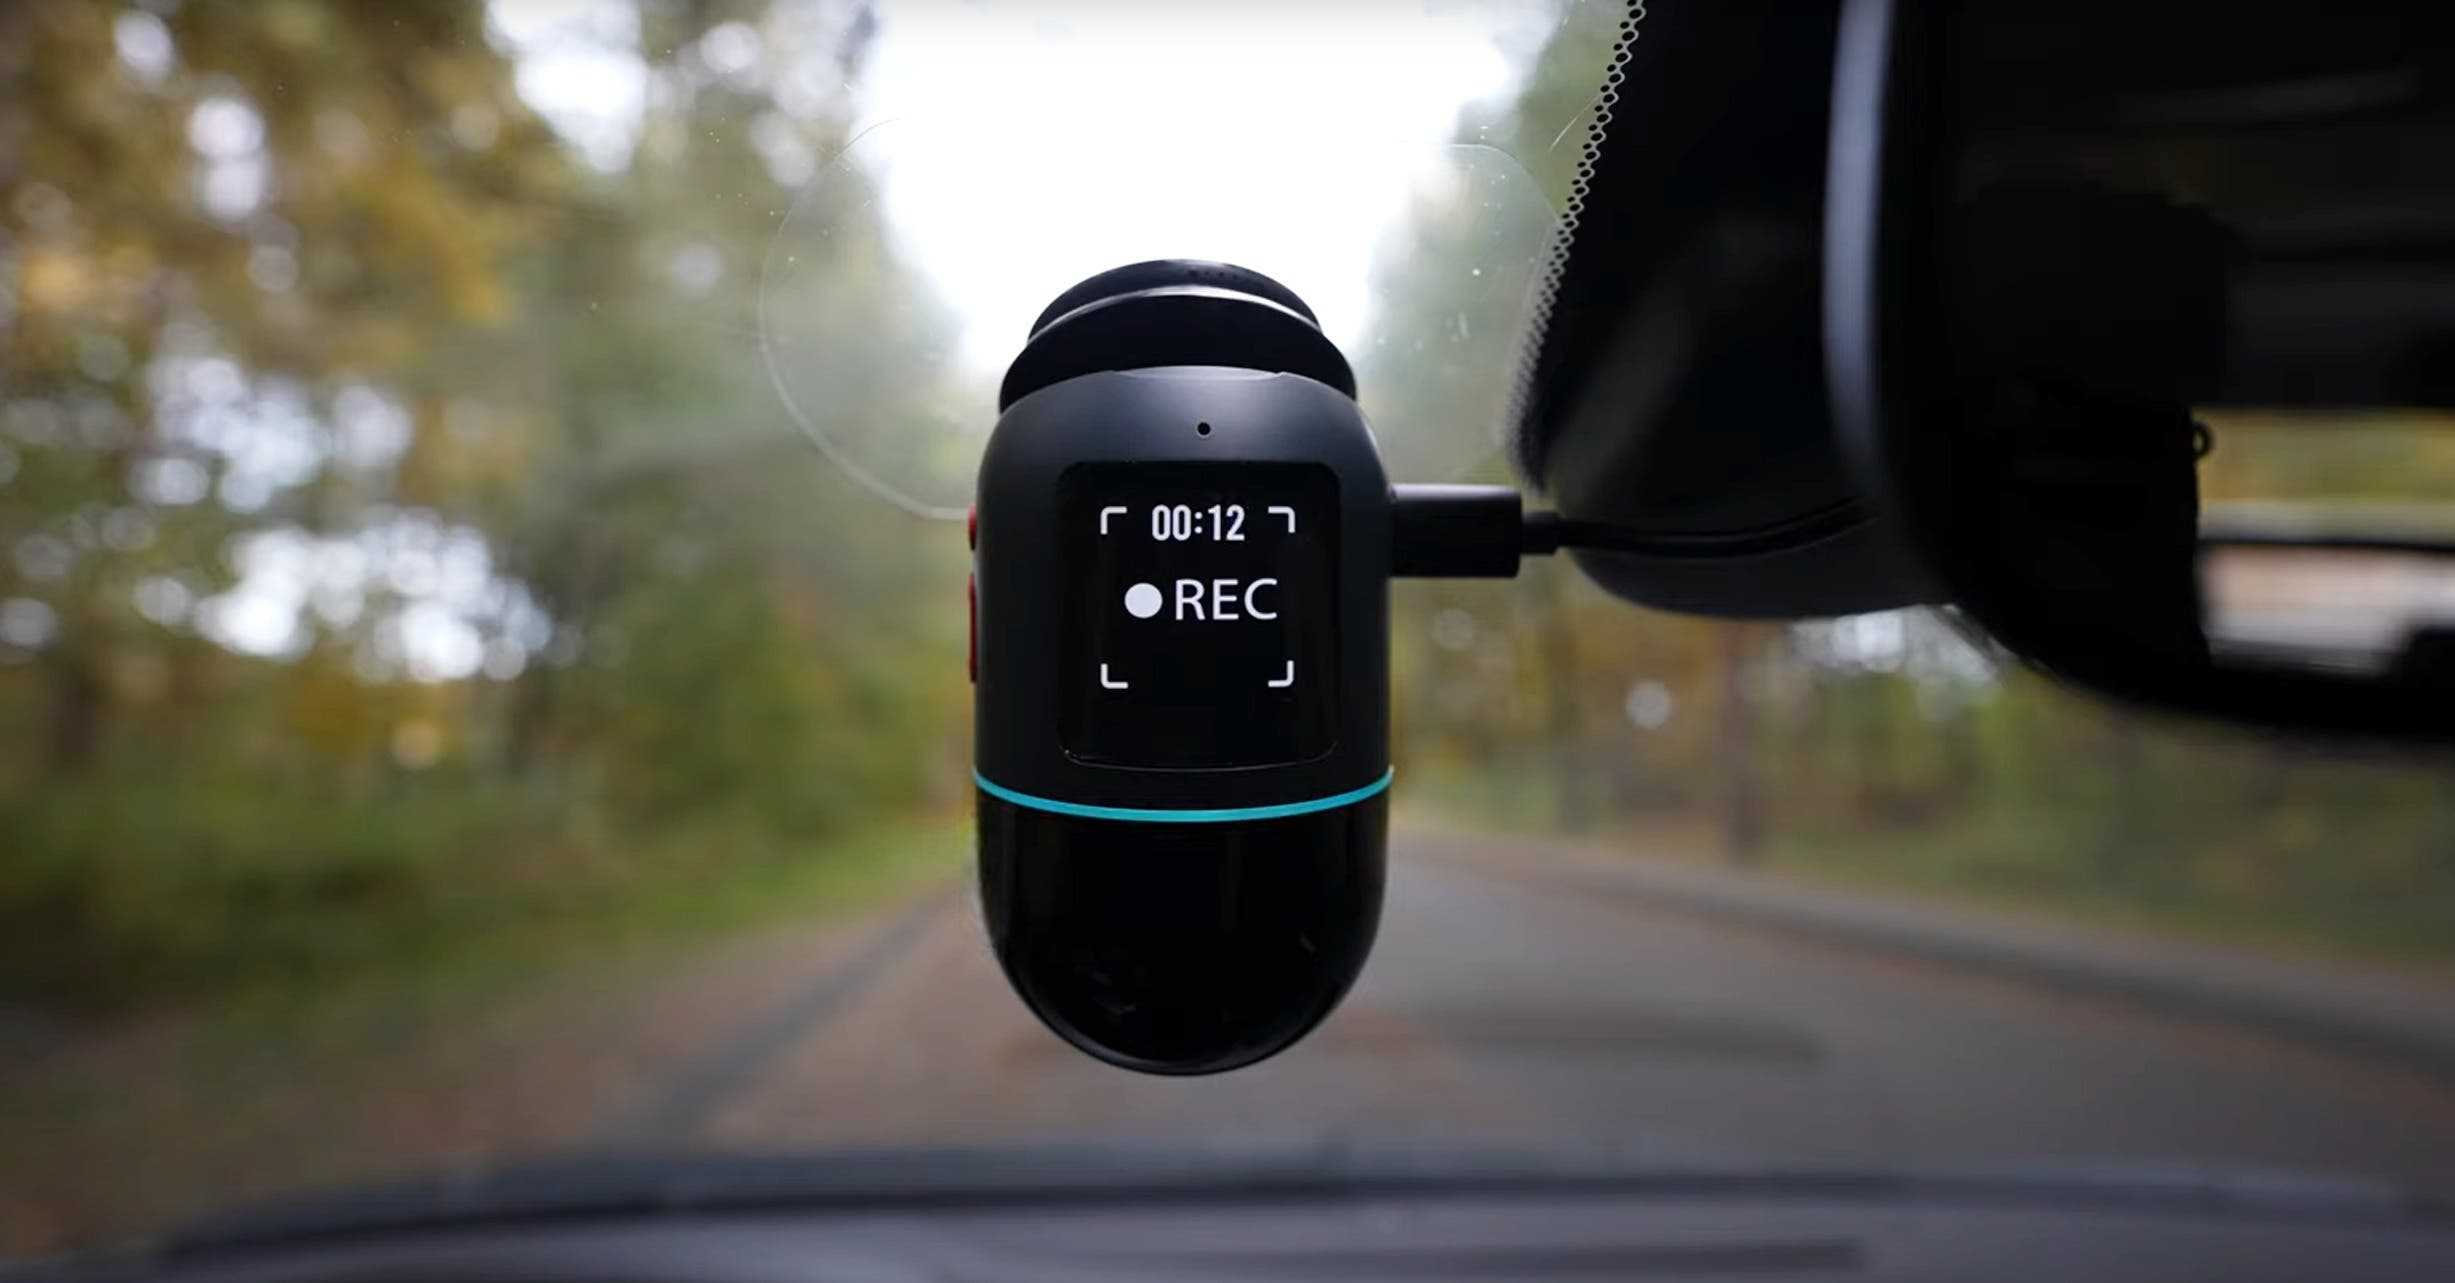 70mai Omni Review: A 360° Rotating Dash Cam! 